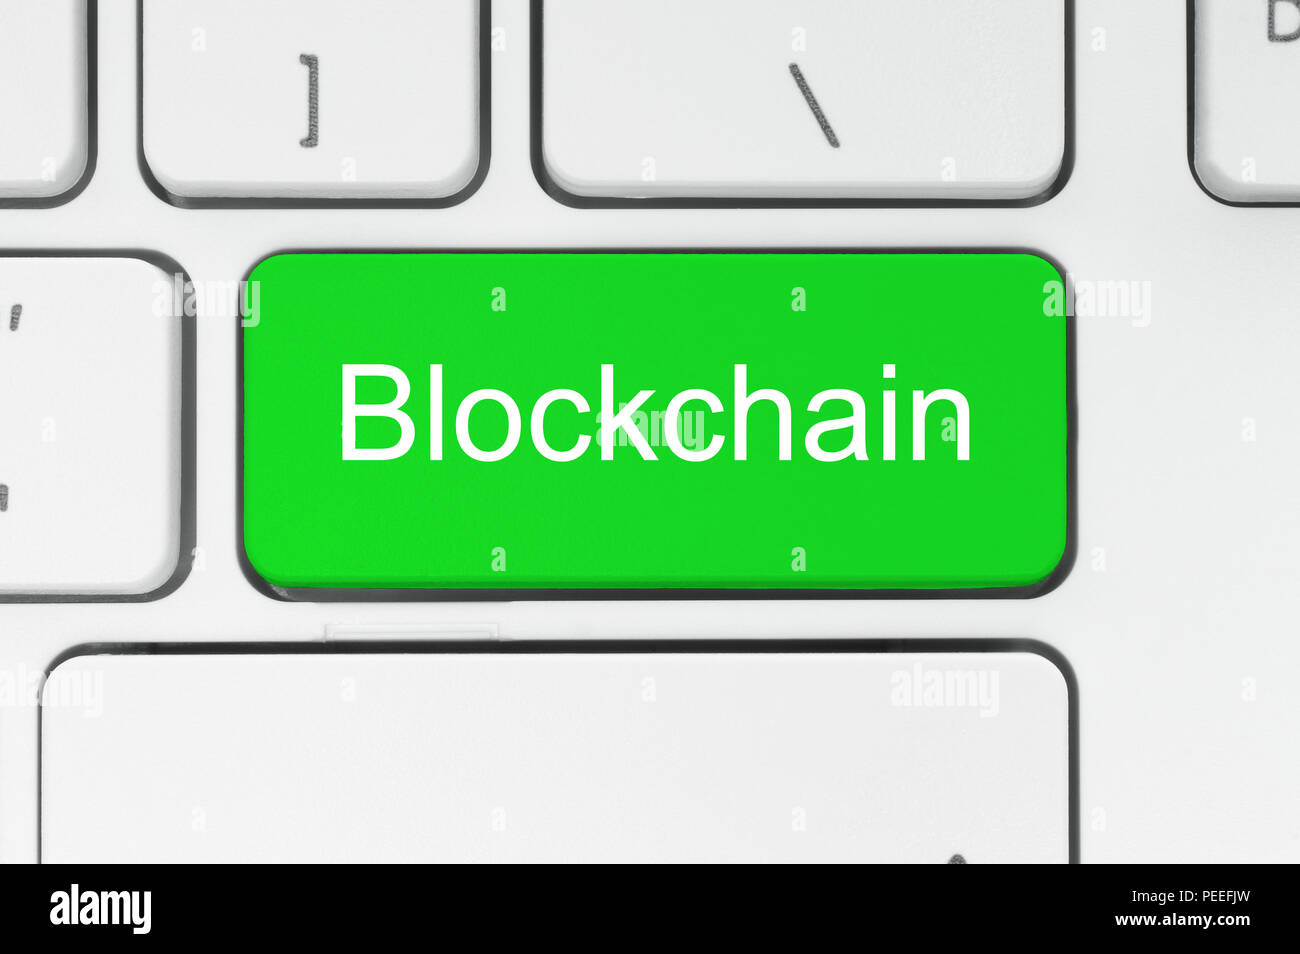 Blockchain concept. Bouton vert avec Blockchain mot sur le clavier, close-up Banque D'Images